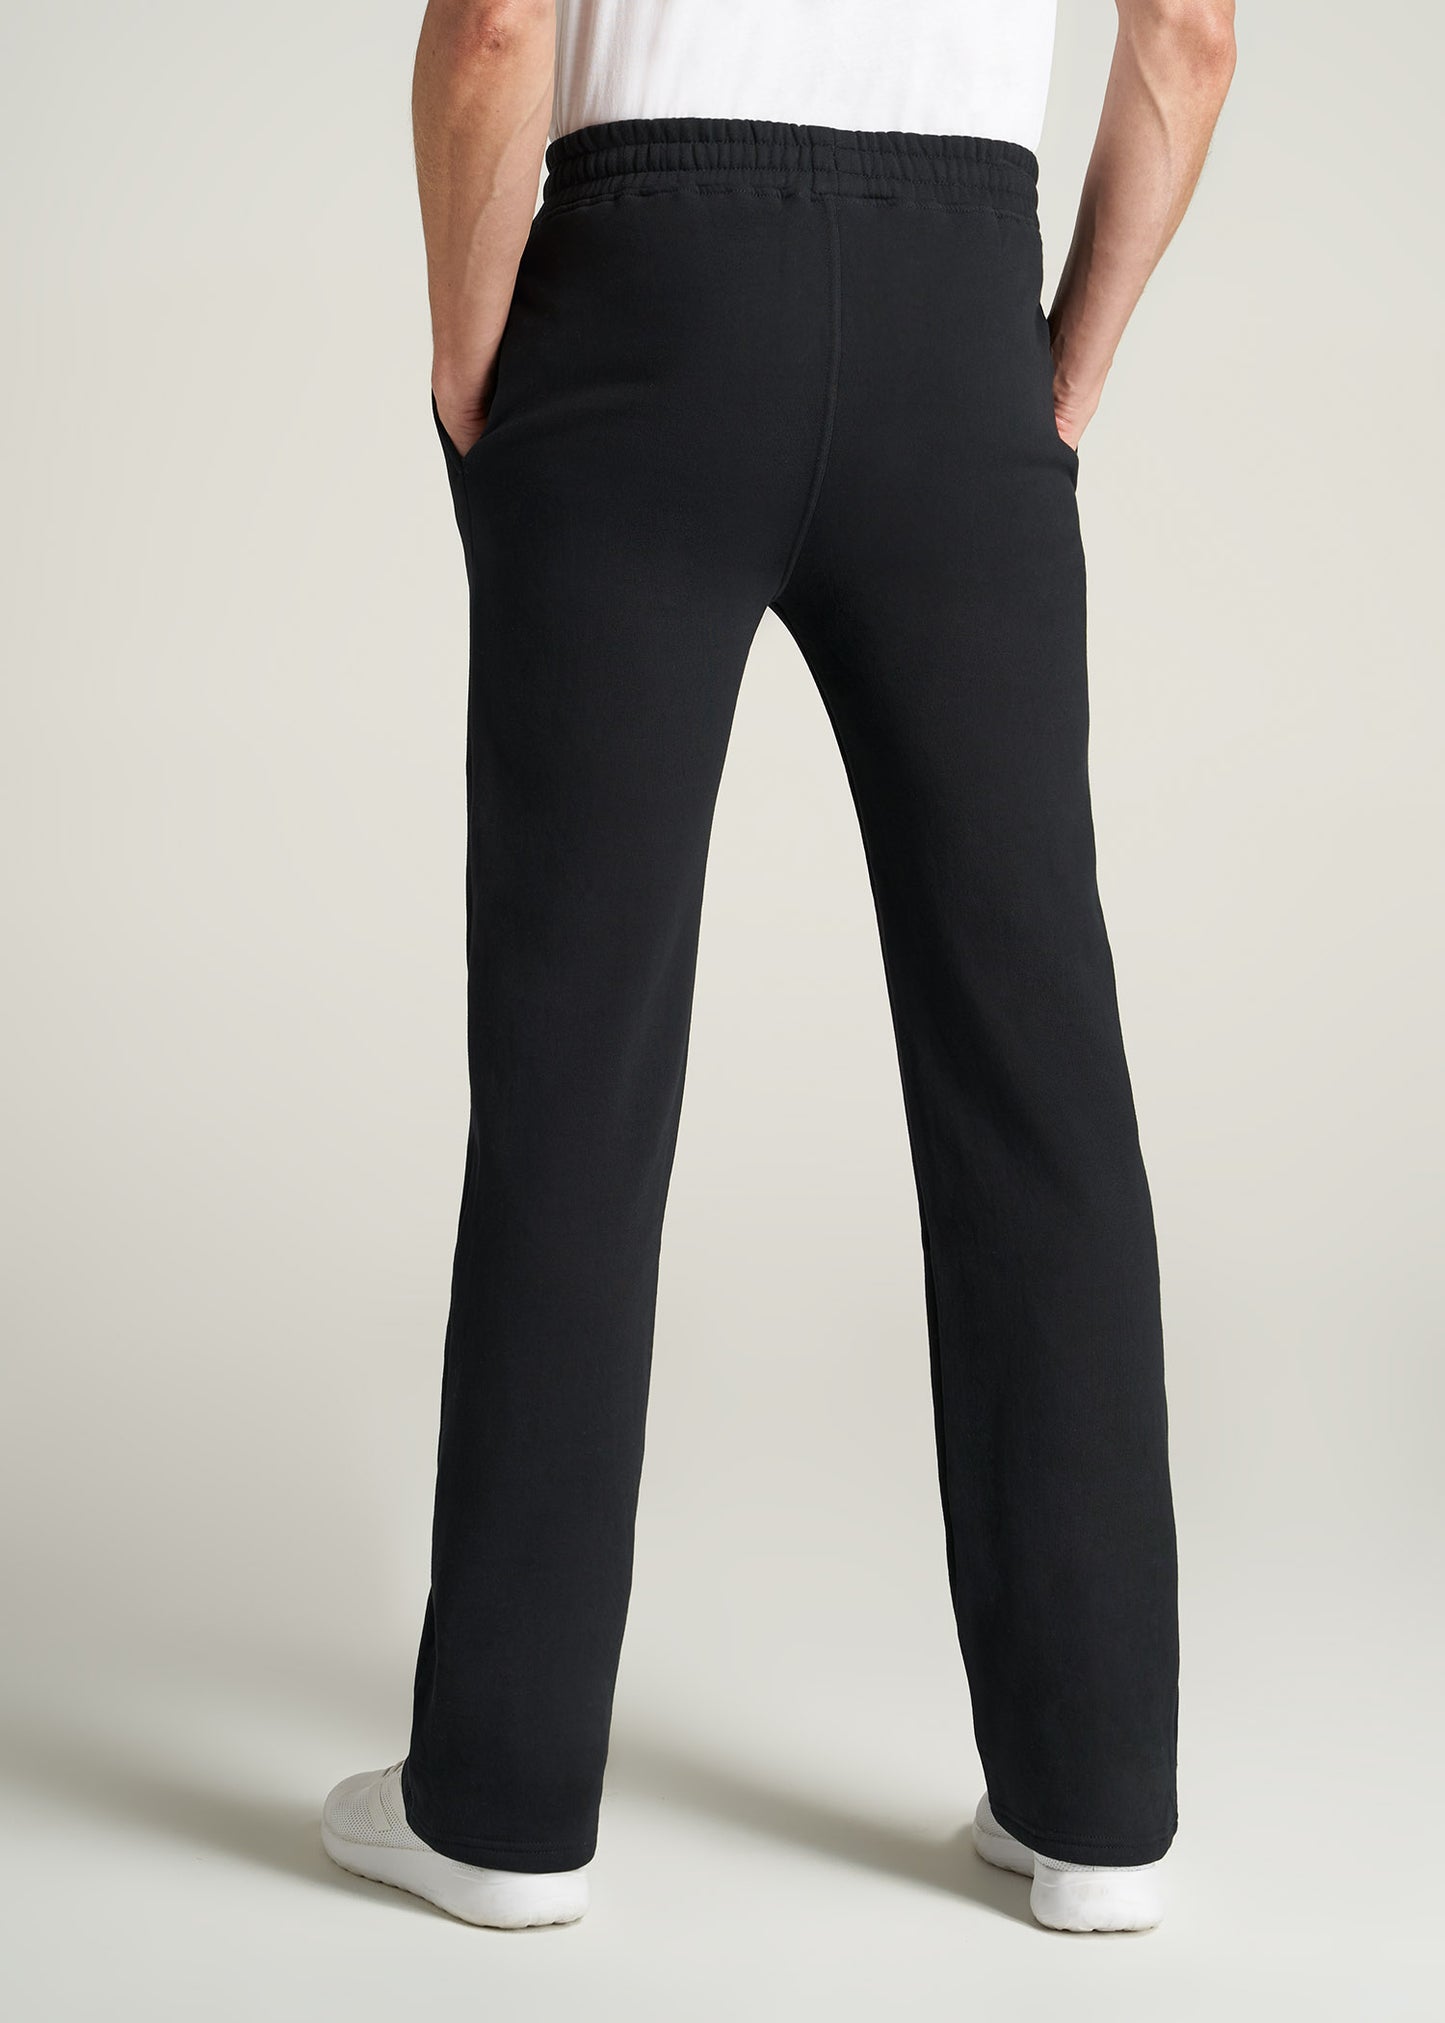 Wearever Fleece Elastic-Bottom Sweatpants for Tall Men in Grey Mix